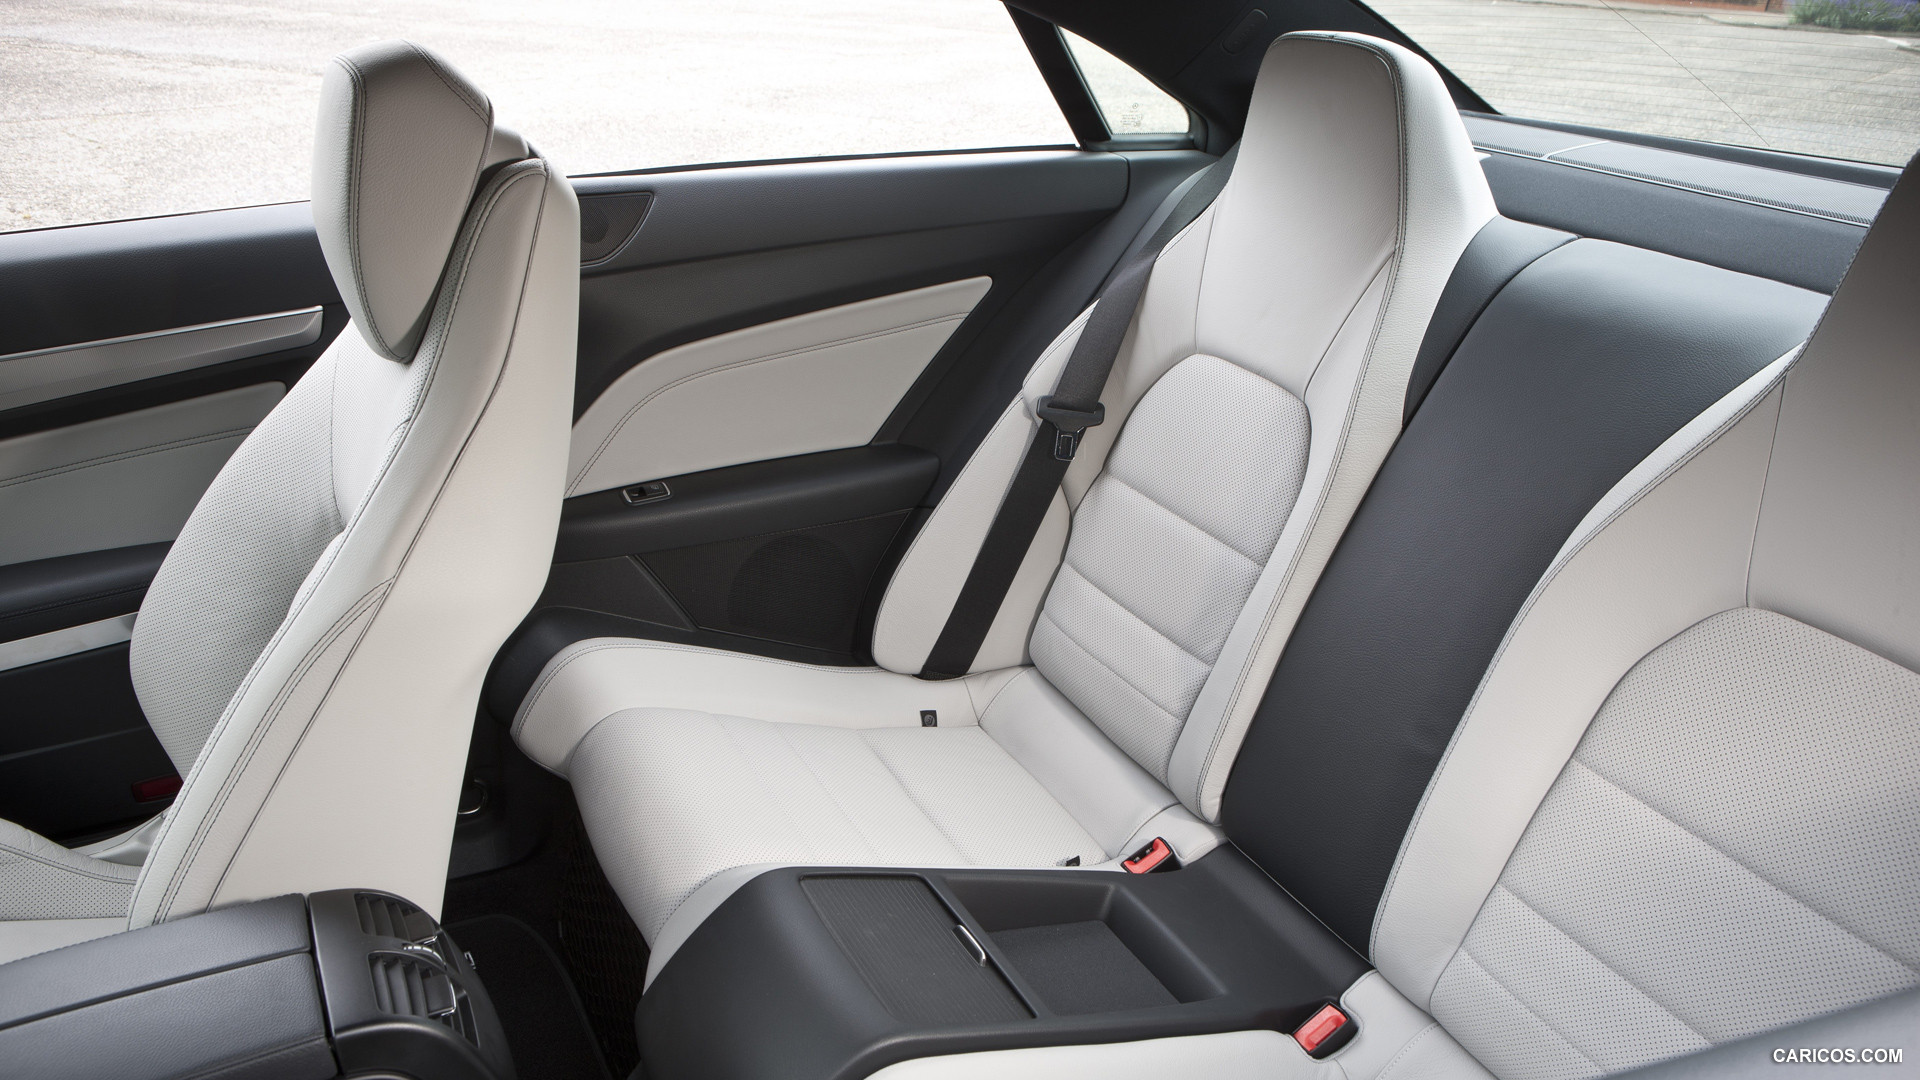 2014 Mercedes-Benz E-Class E 220 CDI Coupe (UK-Version)  - Interior Rear Seats, #57 of 70